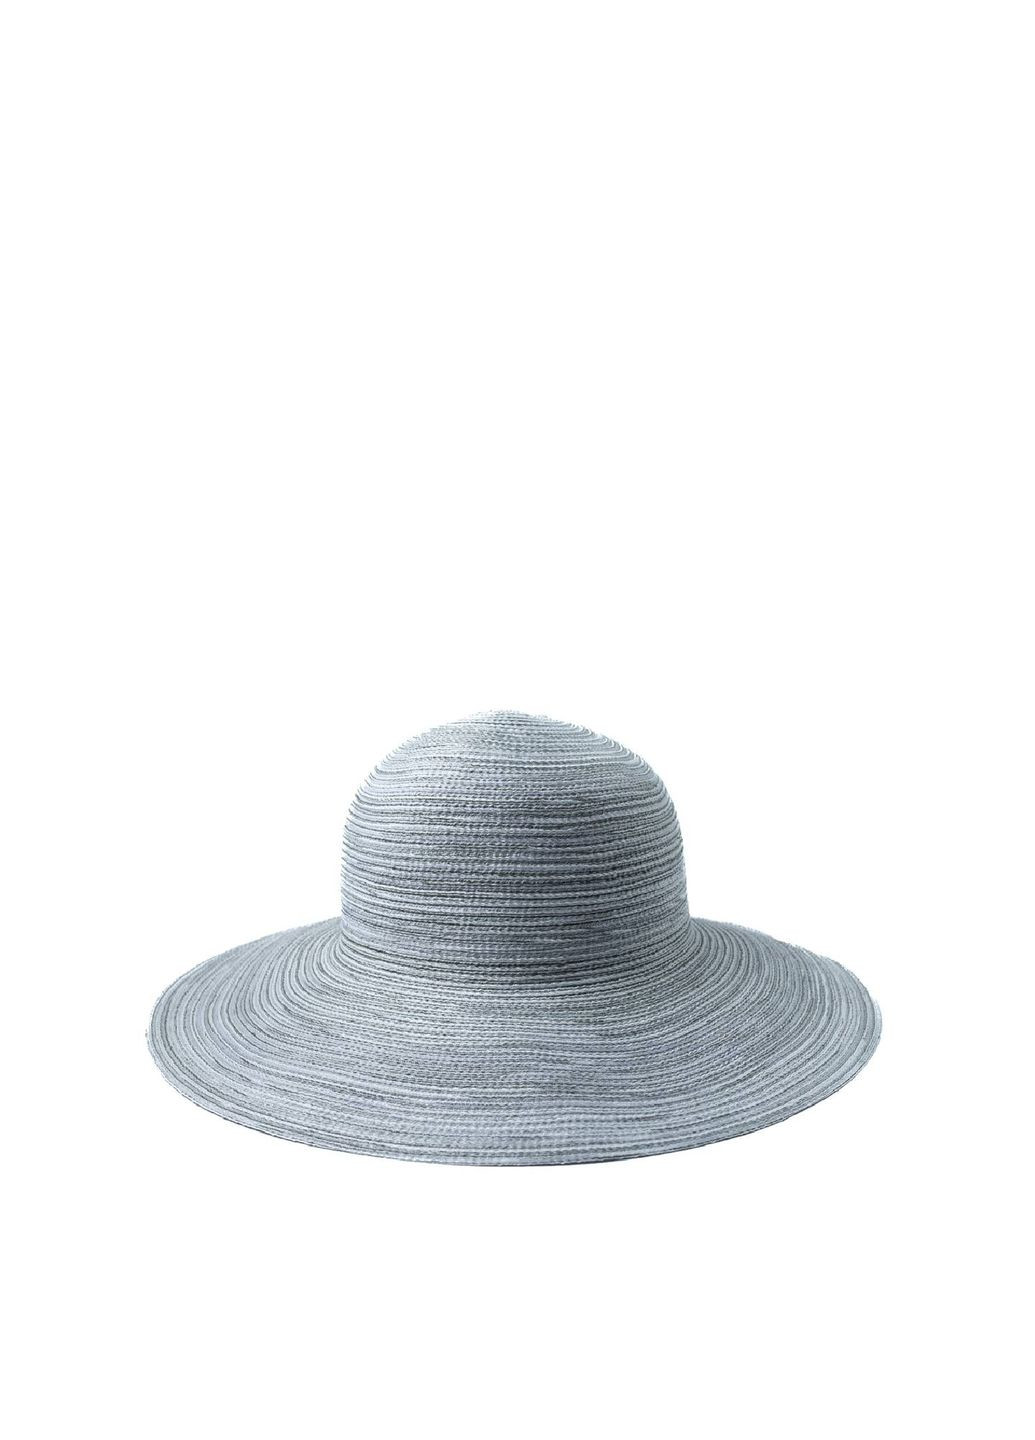 Шляпа слауч женская хлопок серая ЯСМИН LuckyLOOK 444-362 (292668971)